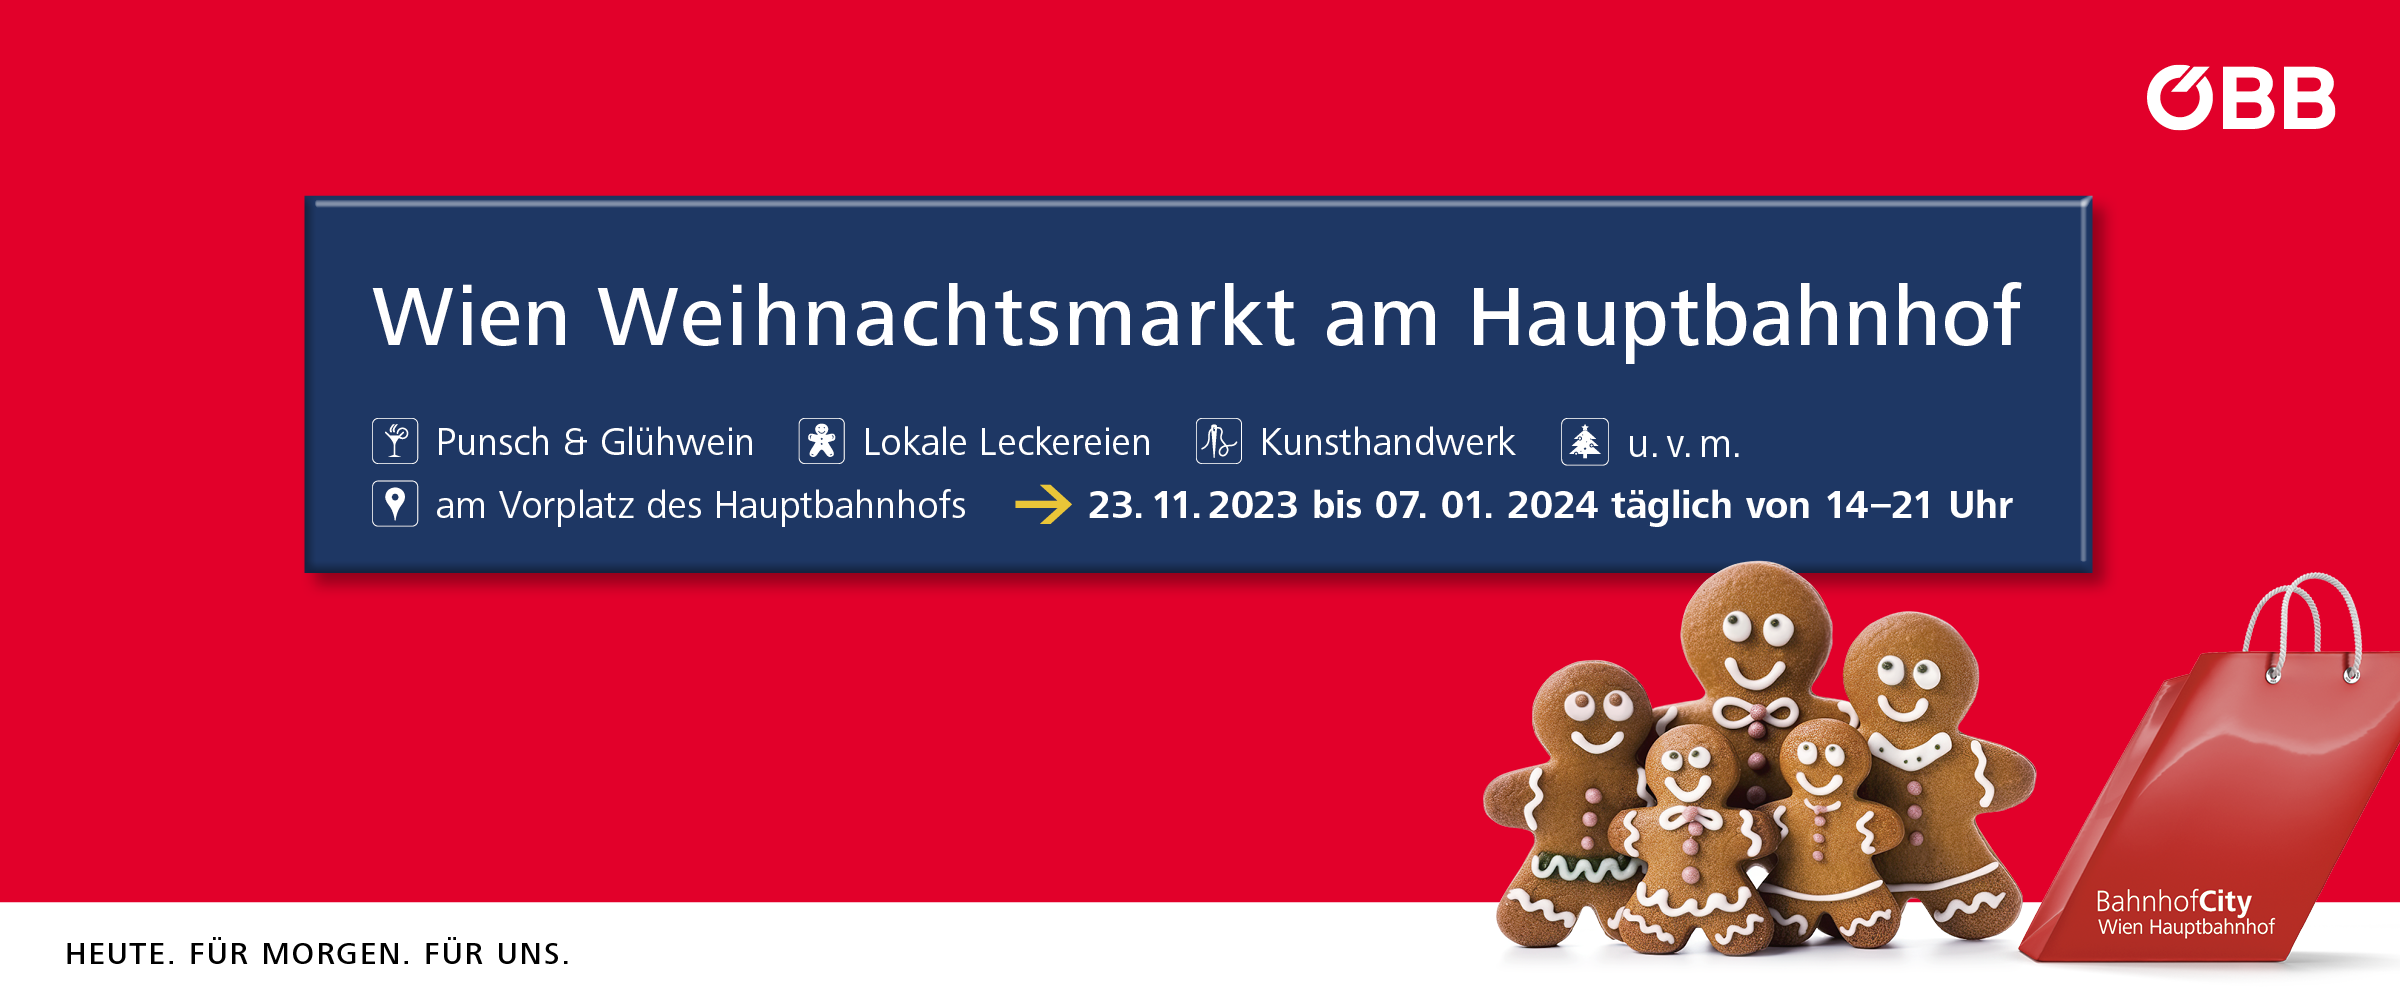 VolXFest | ÖBB Weihnachtsmarkt am Hauptbahnhof